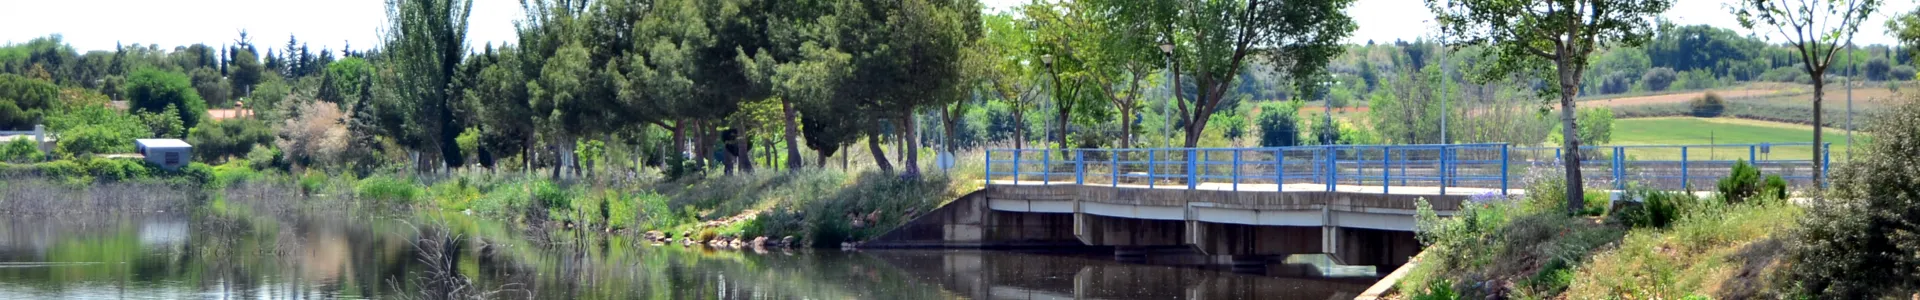 imagen del puente sobre el río en Peralvillo, autor Nacho Vera